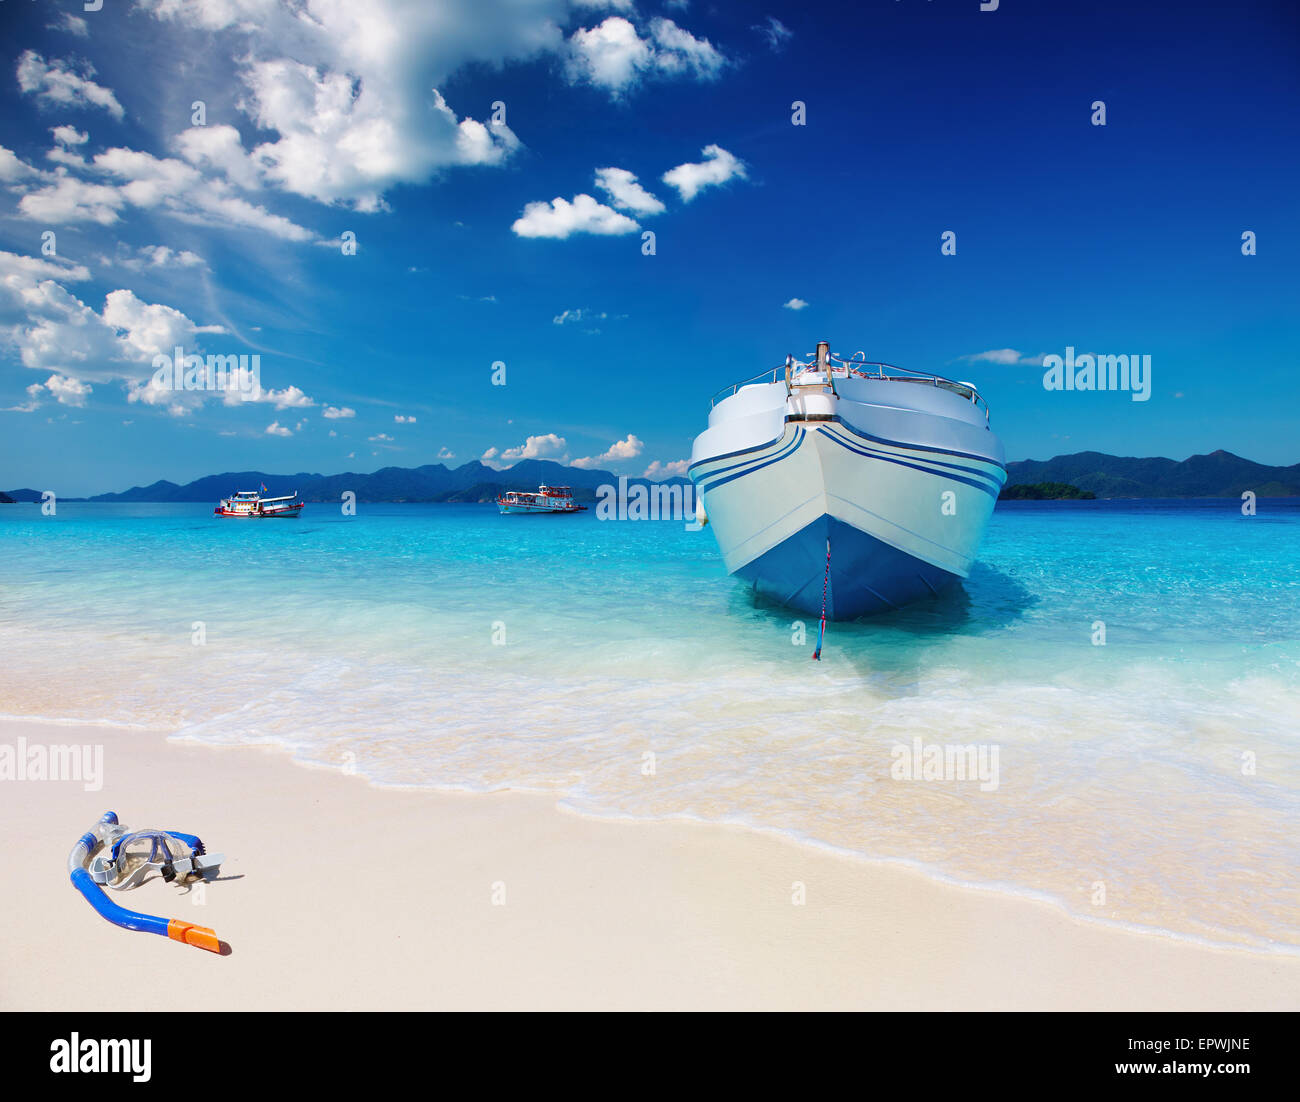 Playa Tropical con arena blanca y mar azul Foto de stock